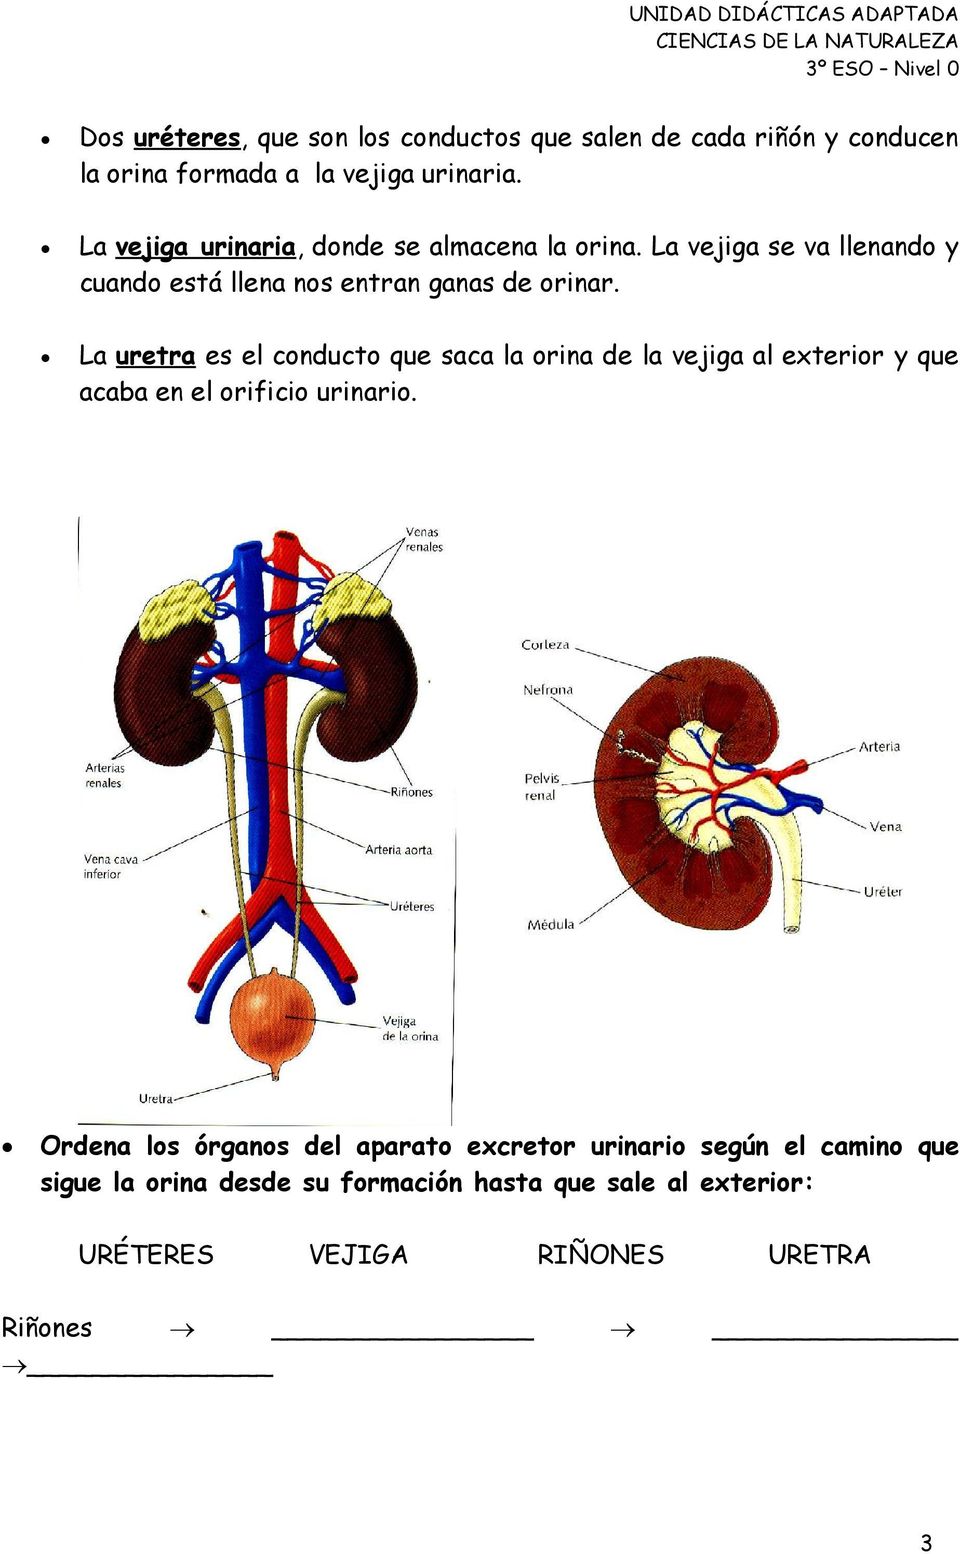 La uretra es el conducto que saca la orina de la vejiga al exterior y que acaba en el orificio urinario.